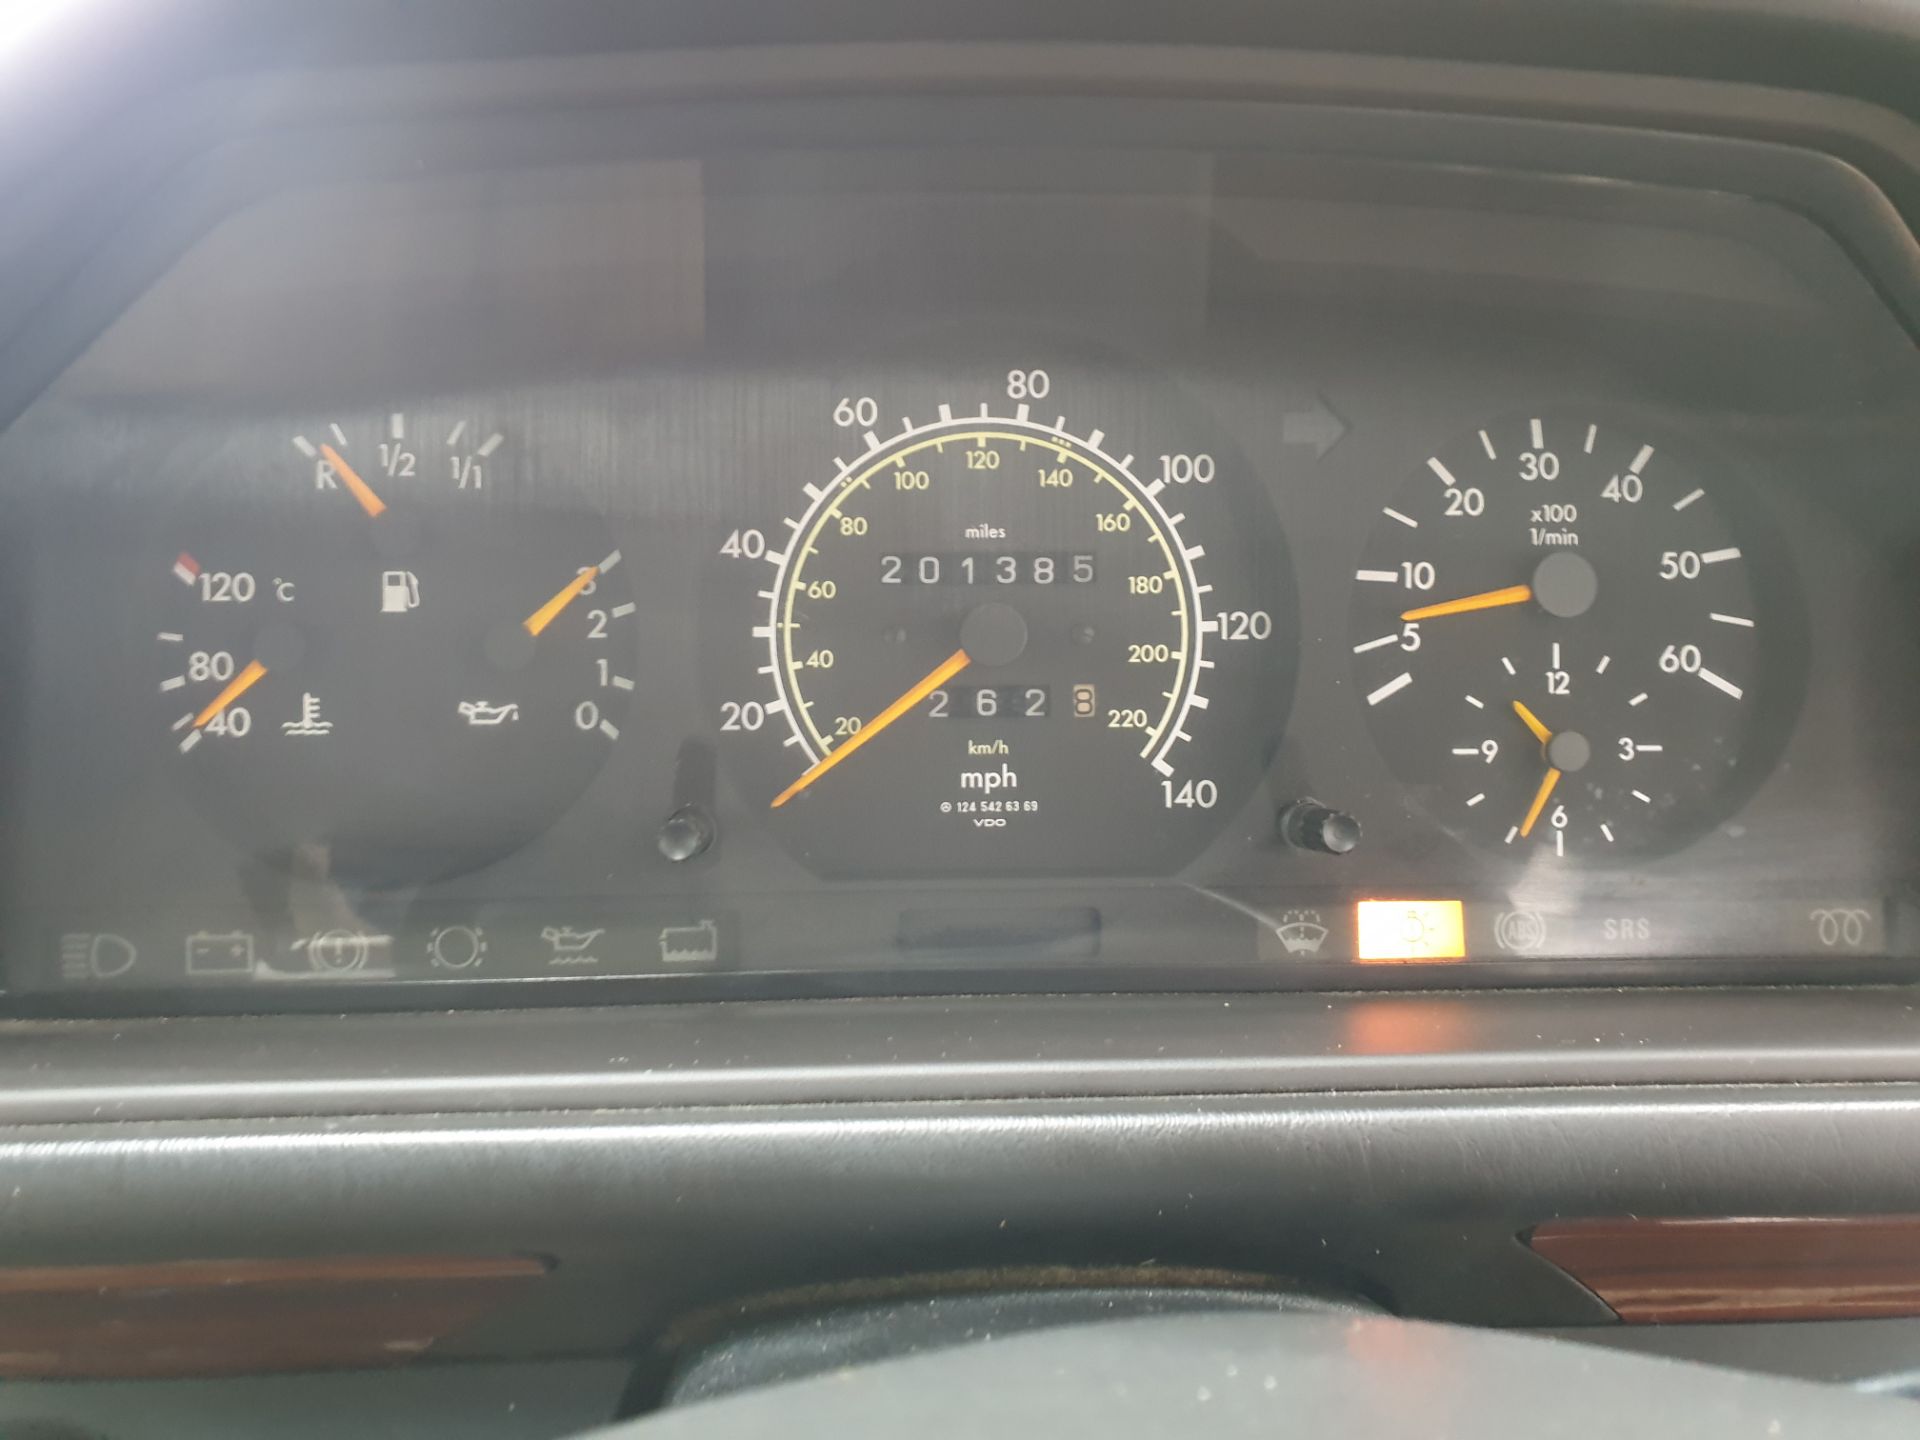 1993 Mercedes E300 D (Non Turbo) - Image 12 of 14